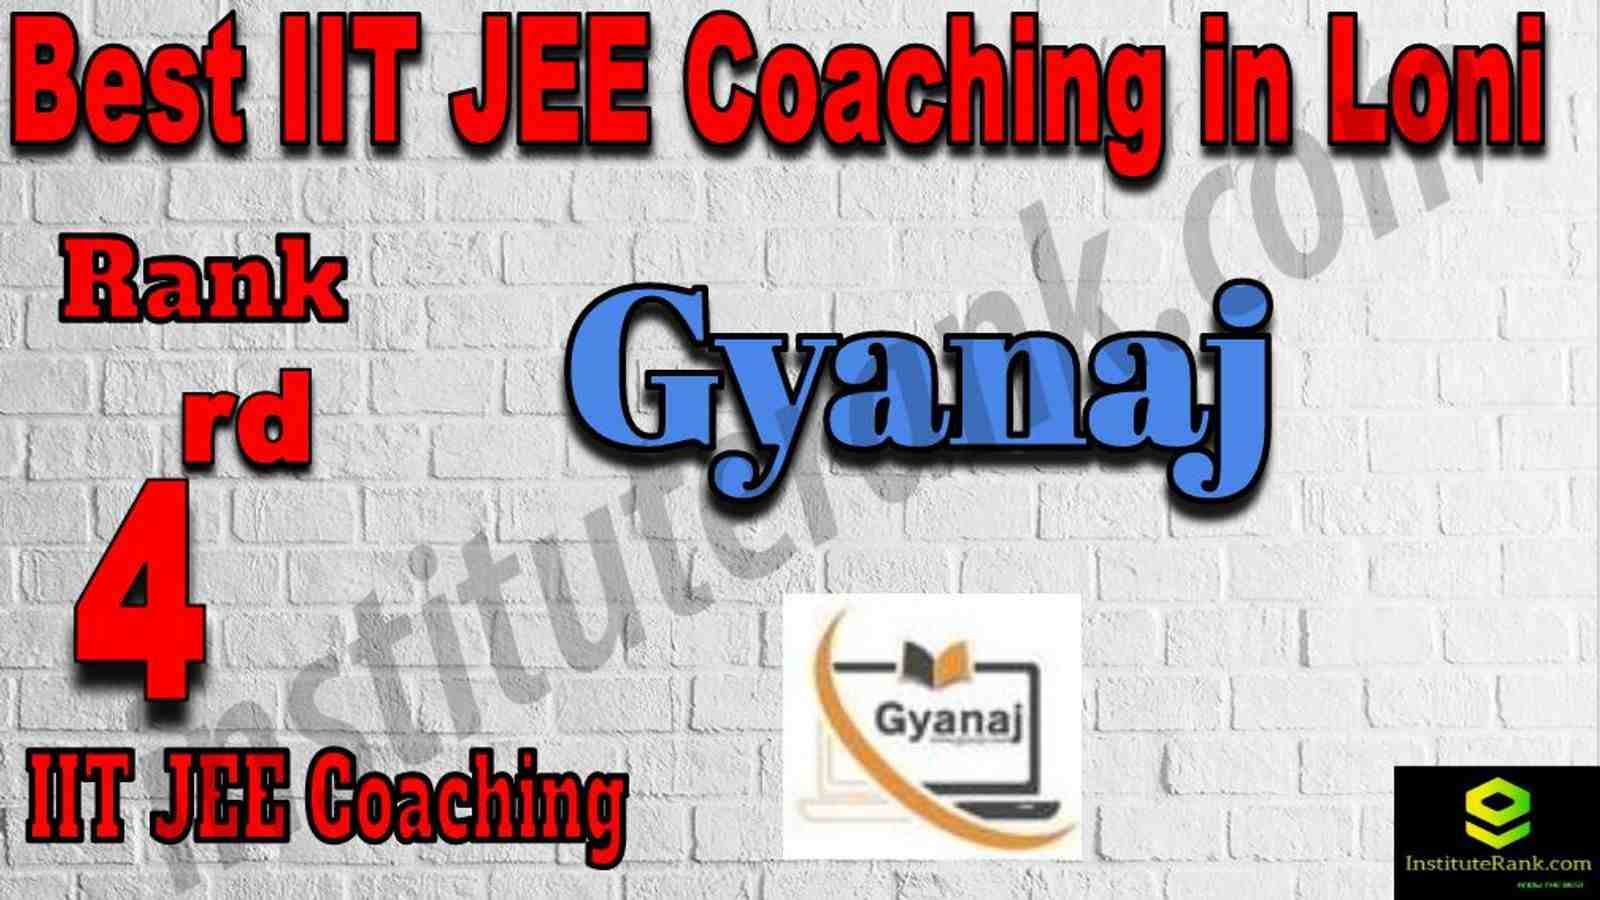 4th Best IIT JEE Coaching in Loni